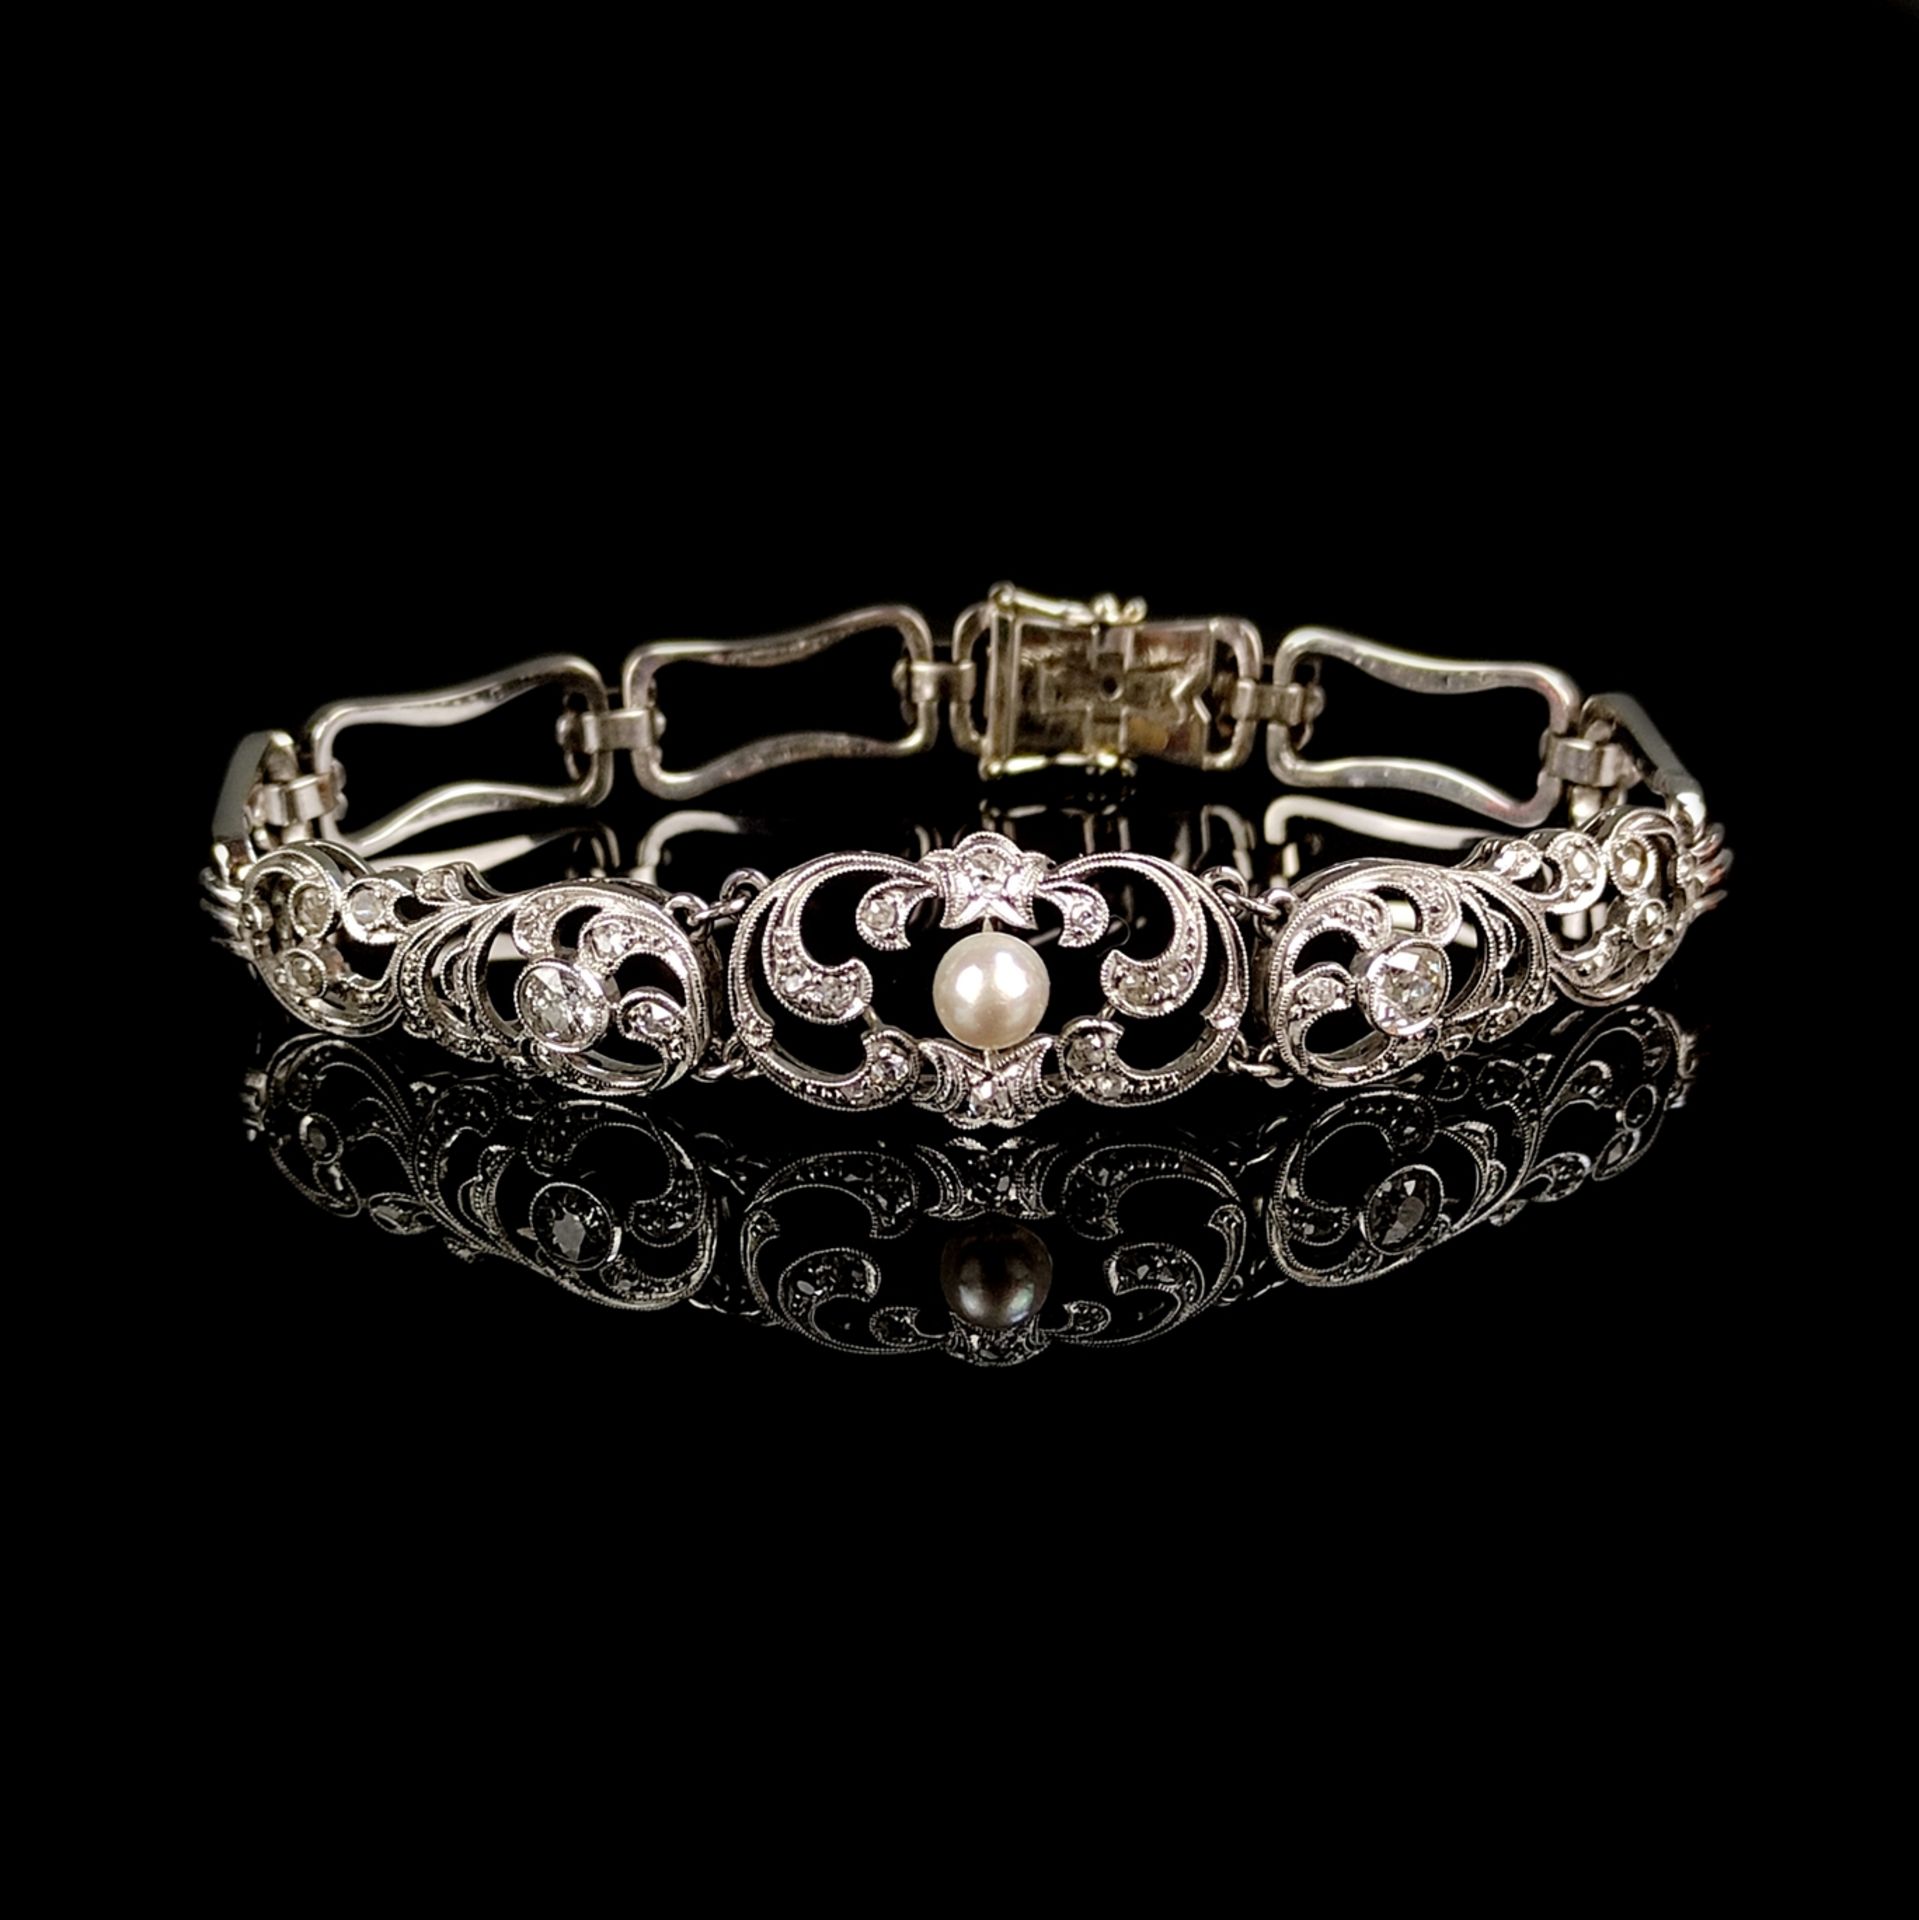 Perlen-Diamant-Armband, 585/14K Weißgold (punziert), 13,85g, schauseitig vegetabiles, durchbrochen 